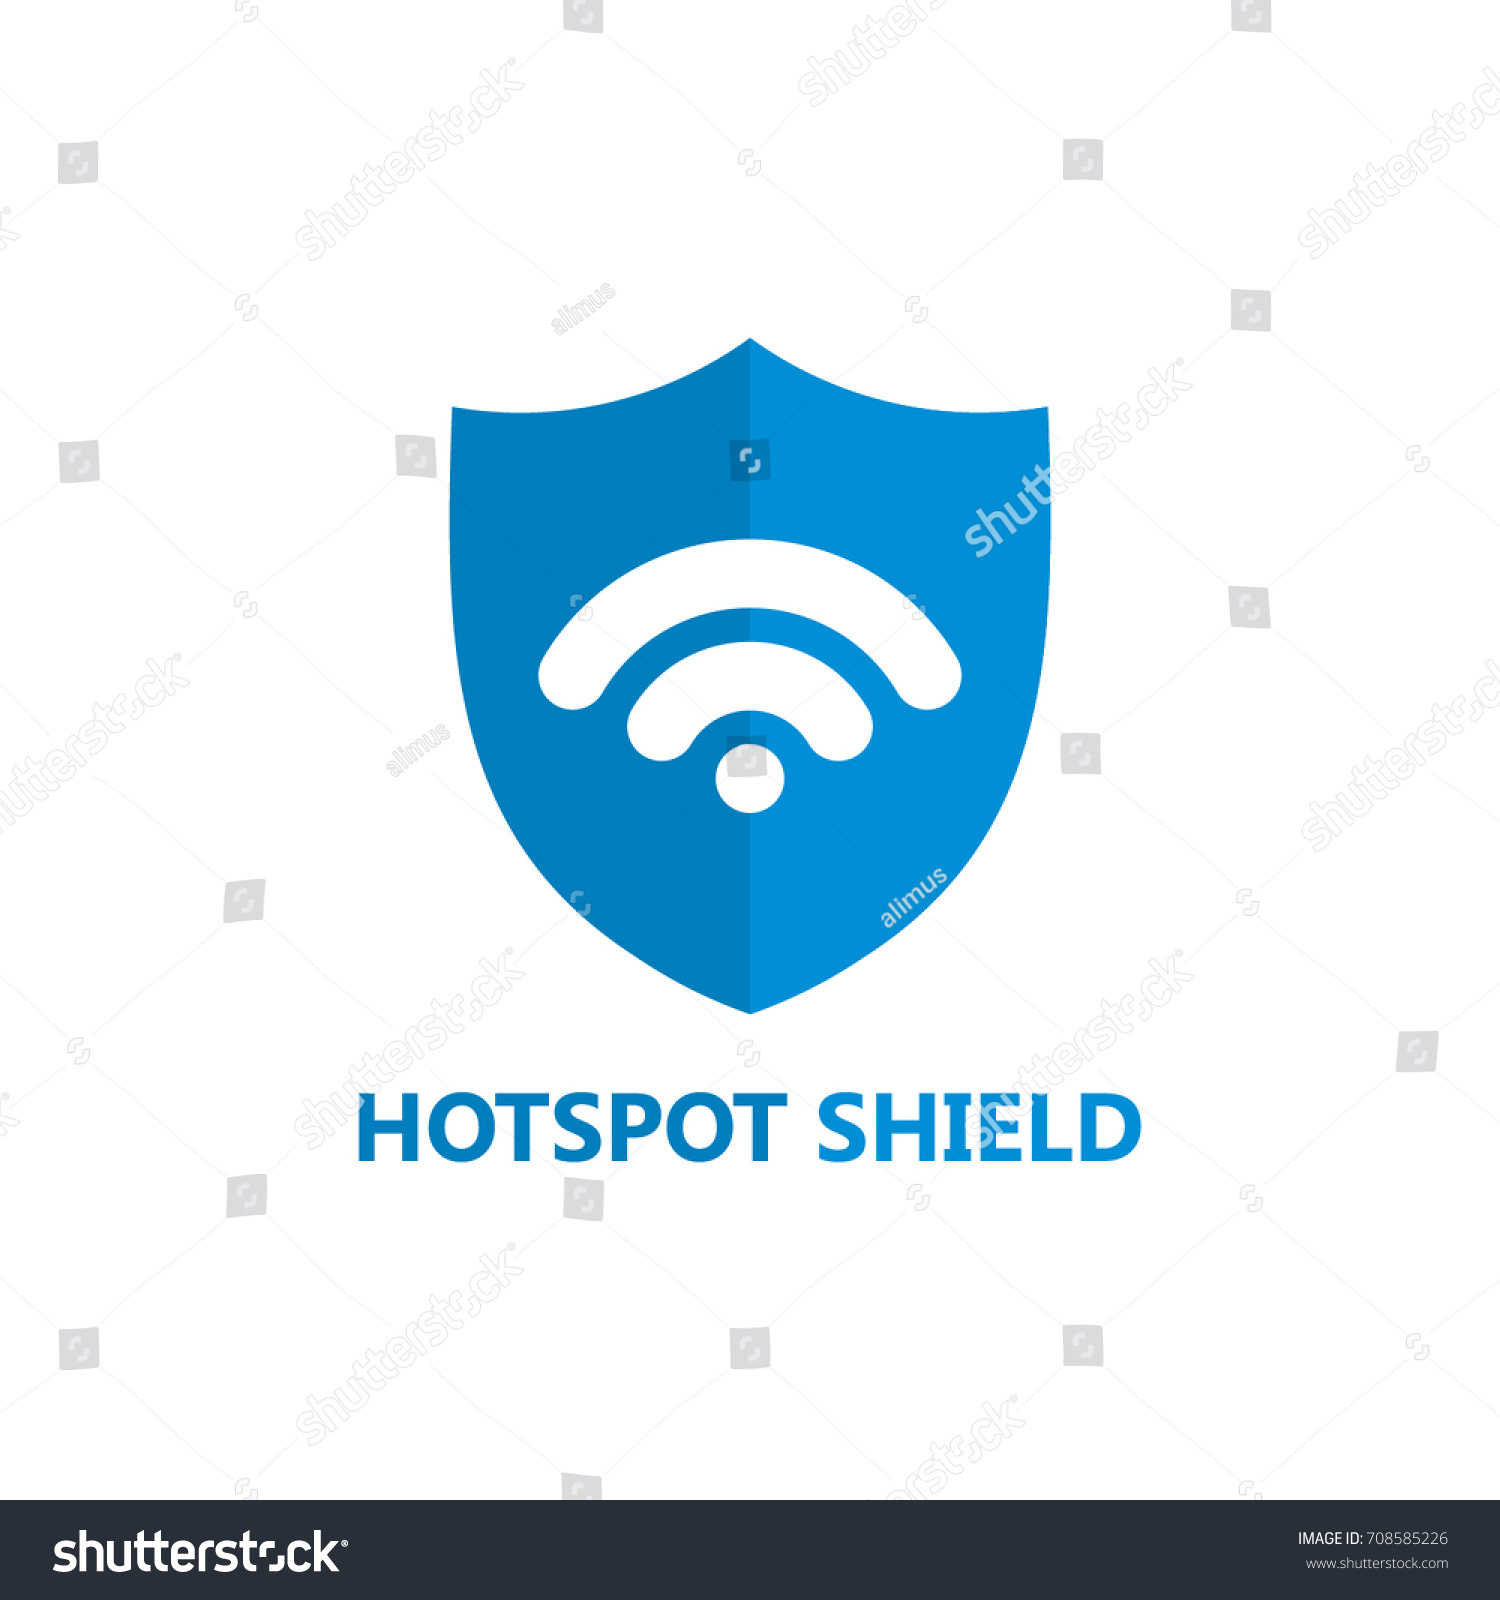 Hotspot Shield Logo Template Design Stock Vector